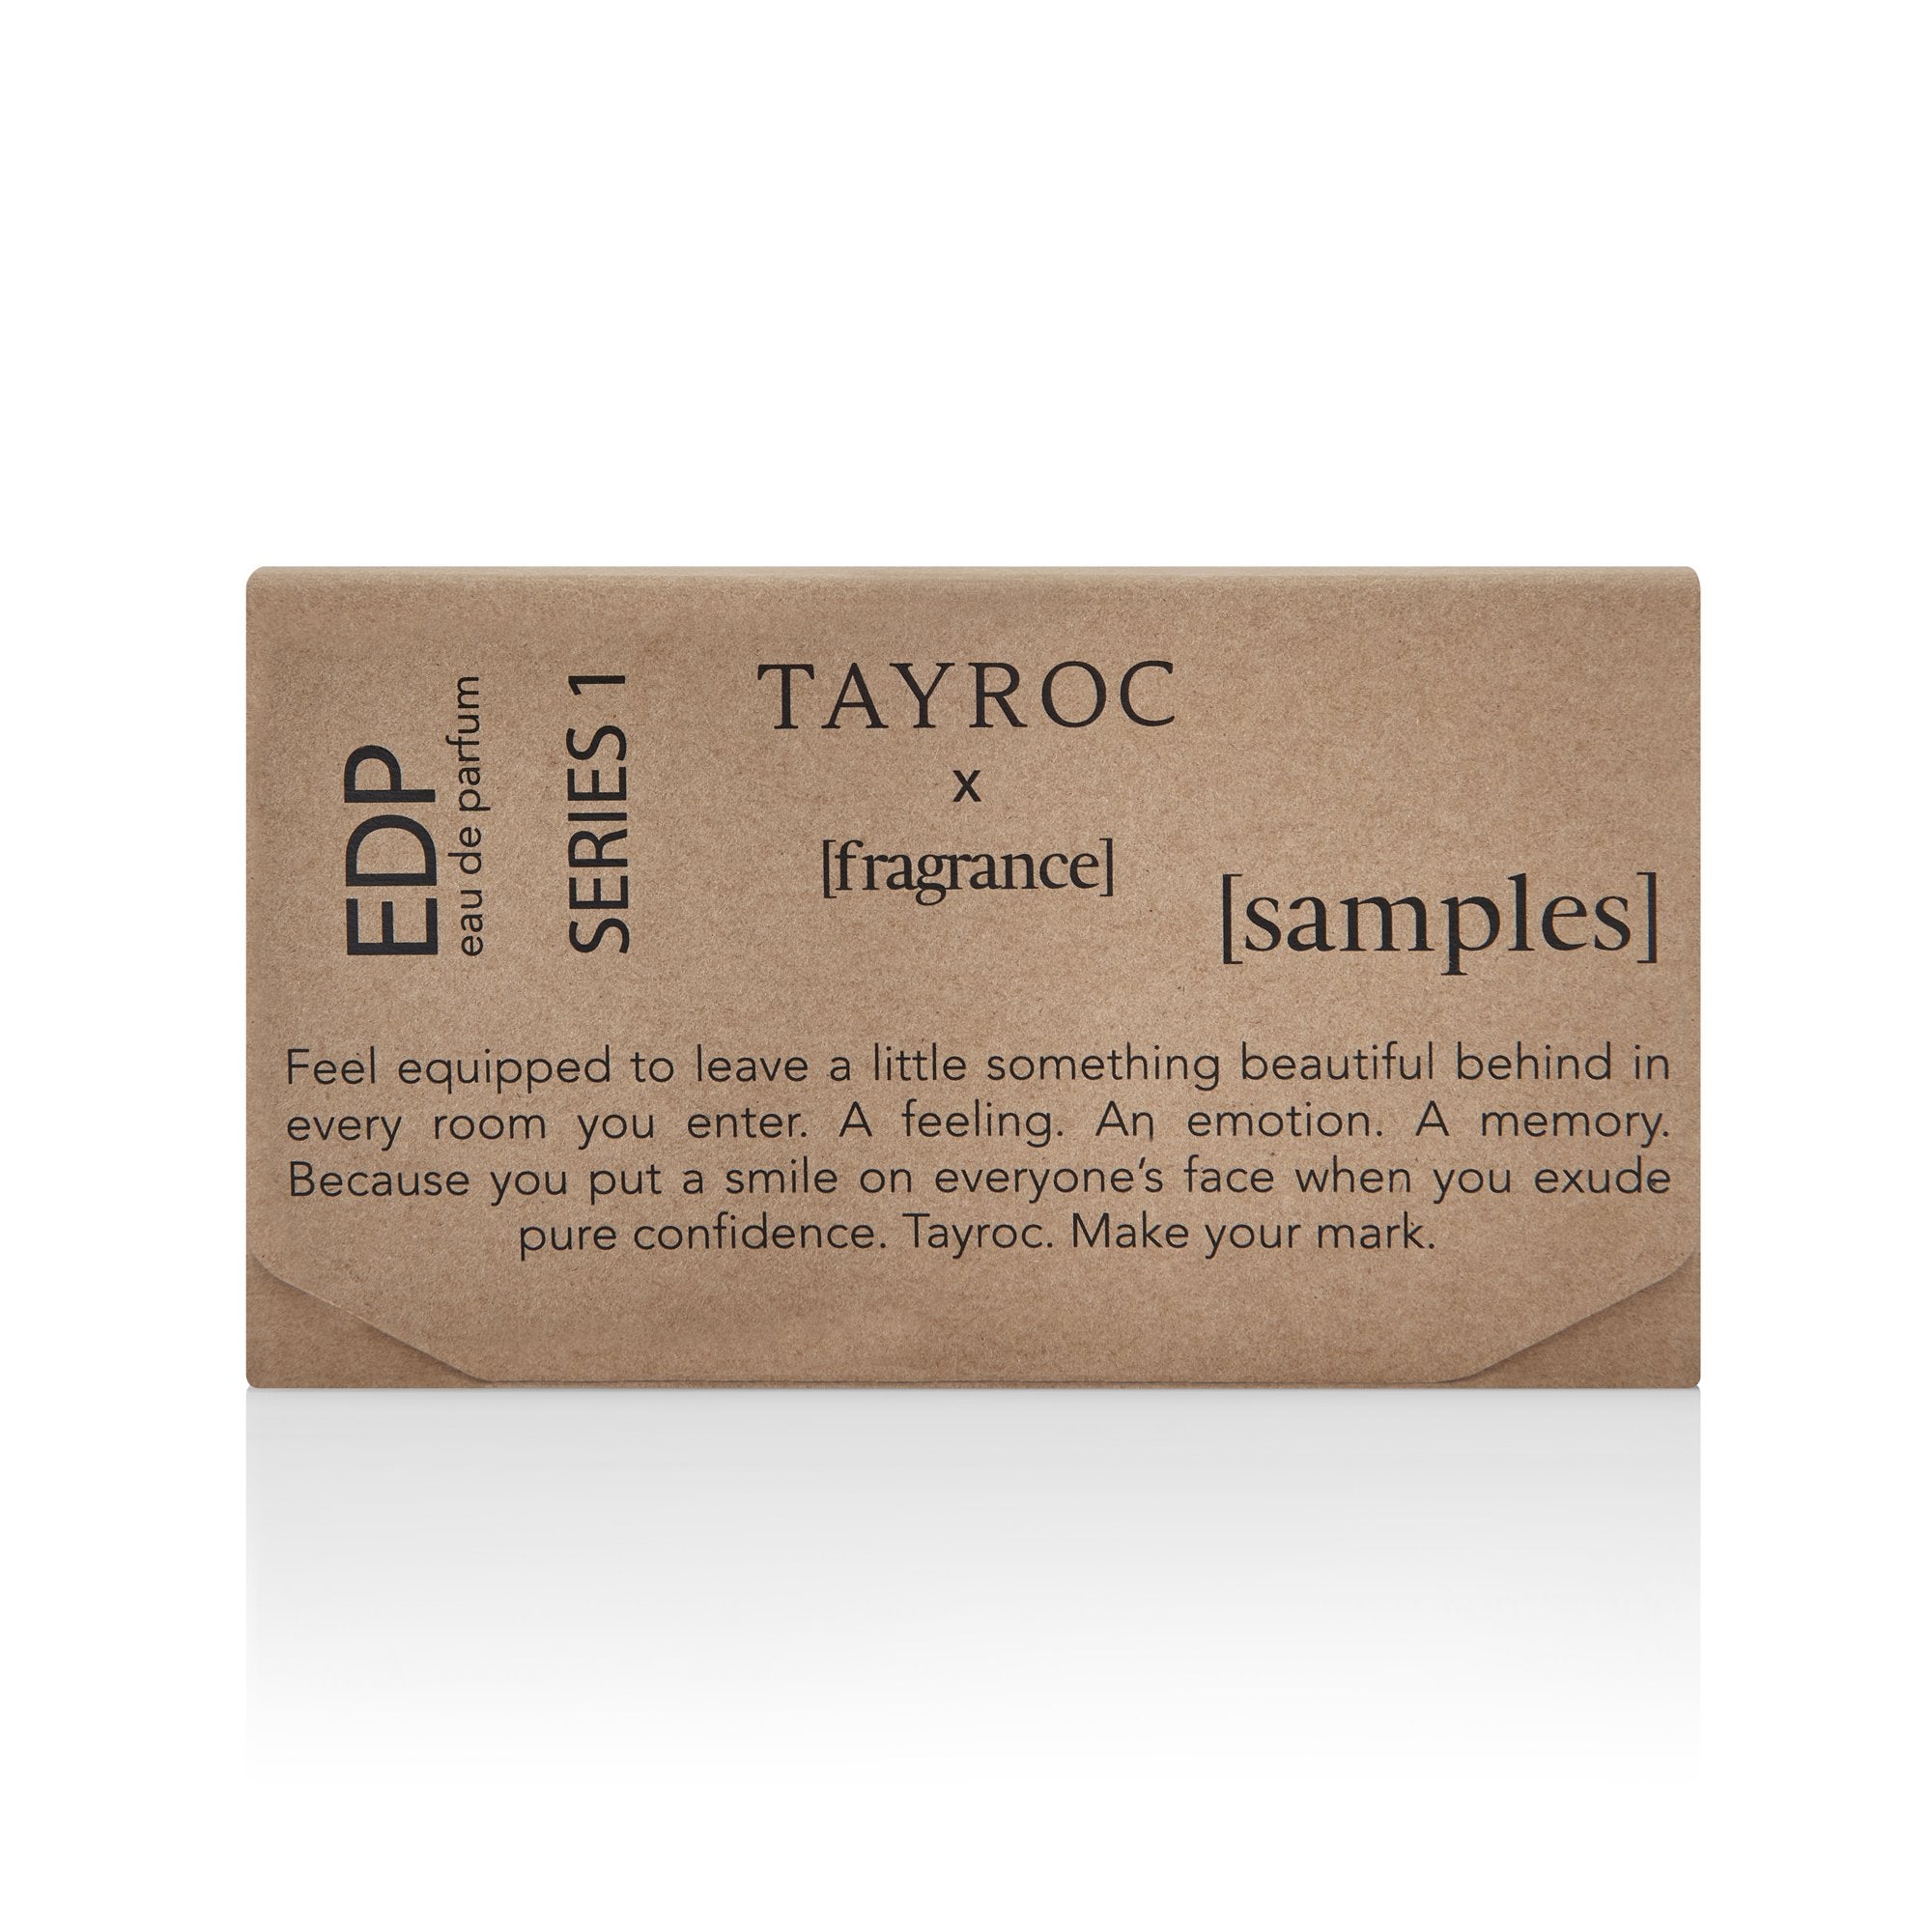 Tayroc Mini Travel Set Fragrance 6 x 2ml Vials